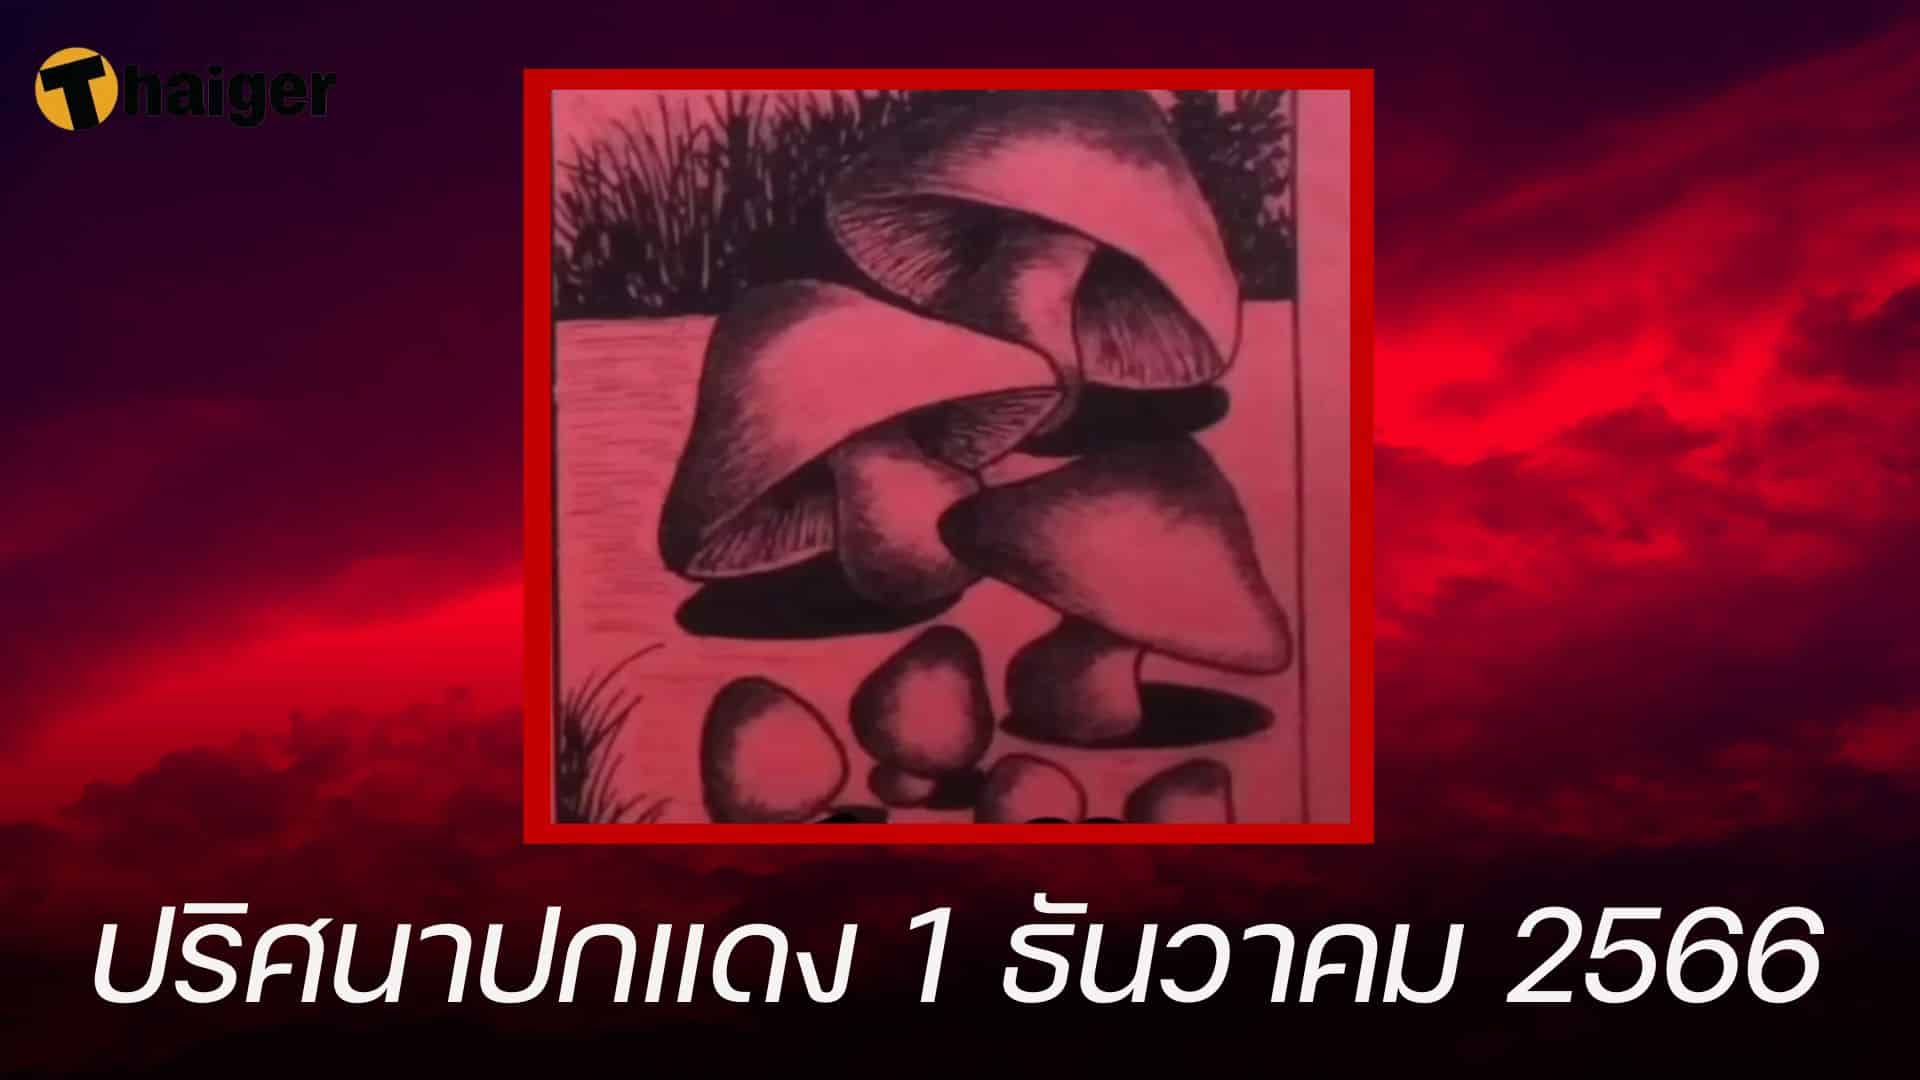 แจกเลขเด็ด ปริศนาปกแดง 1 ธ.ค. 66 ลุ้นเข้ารางวัลต่อเนื่อง | Thaiger ข่าวไทย